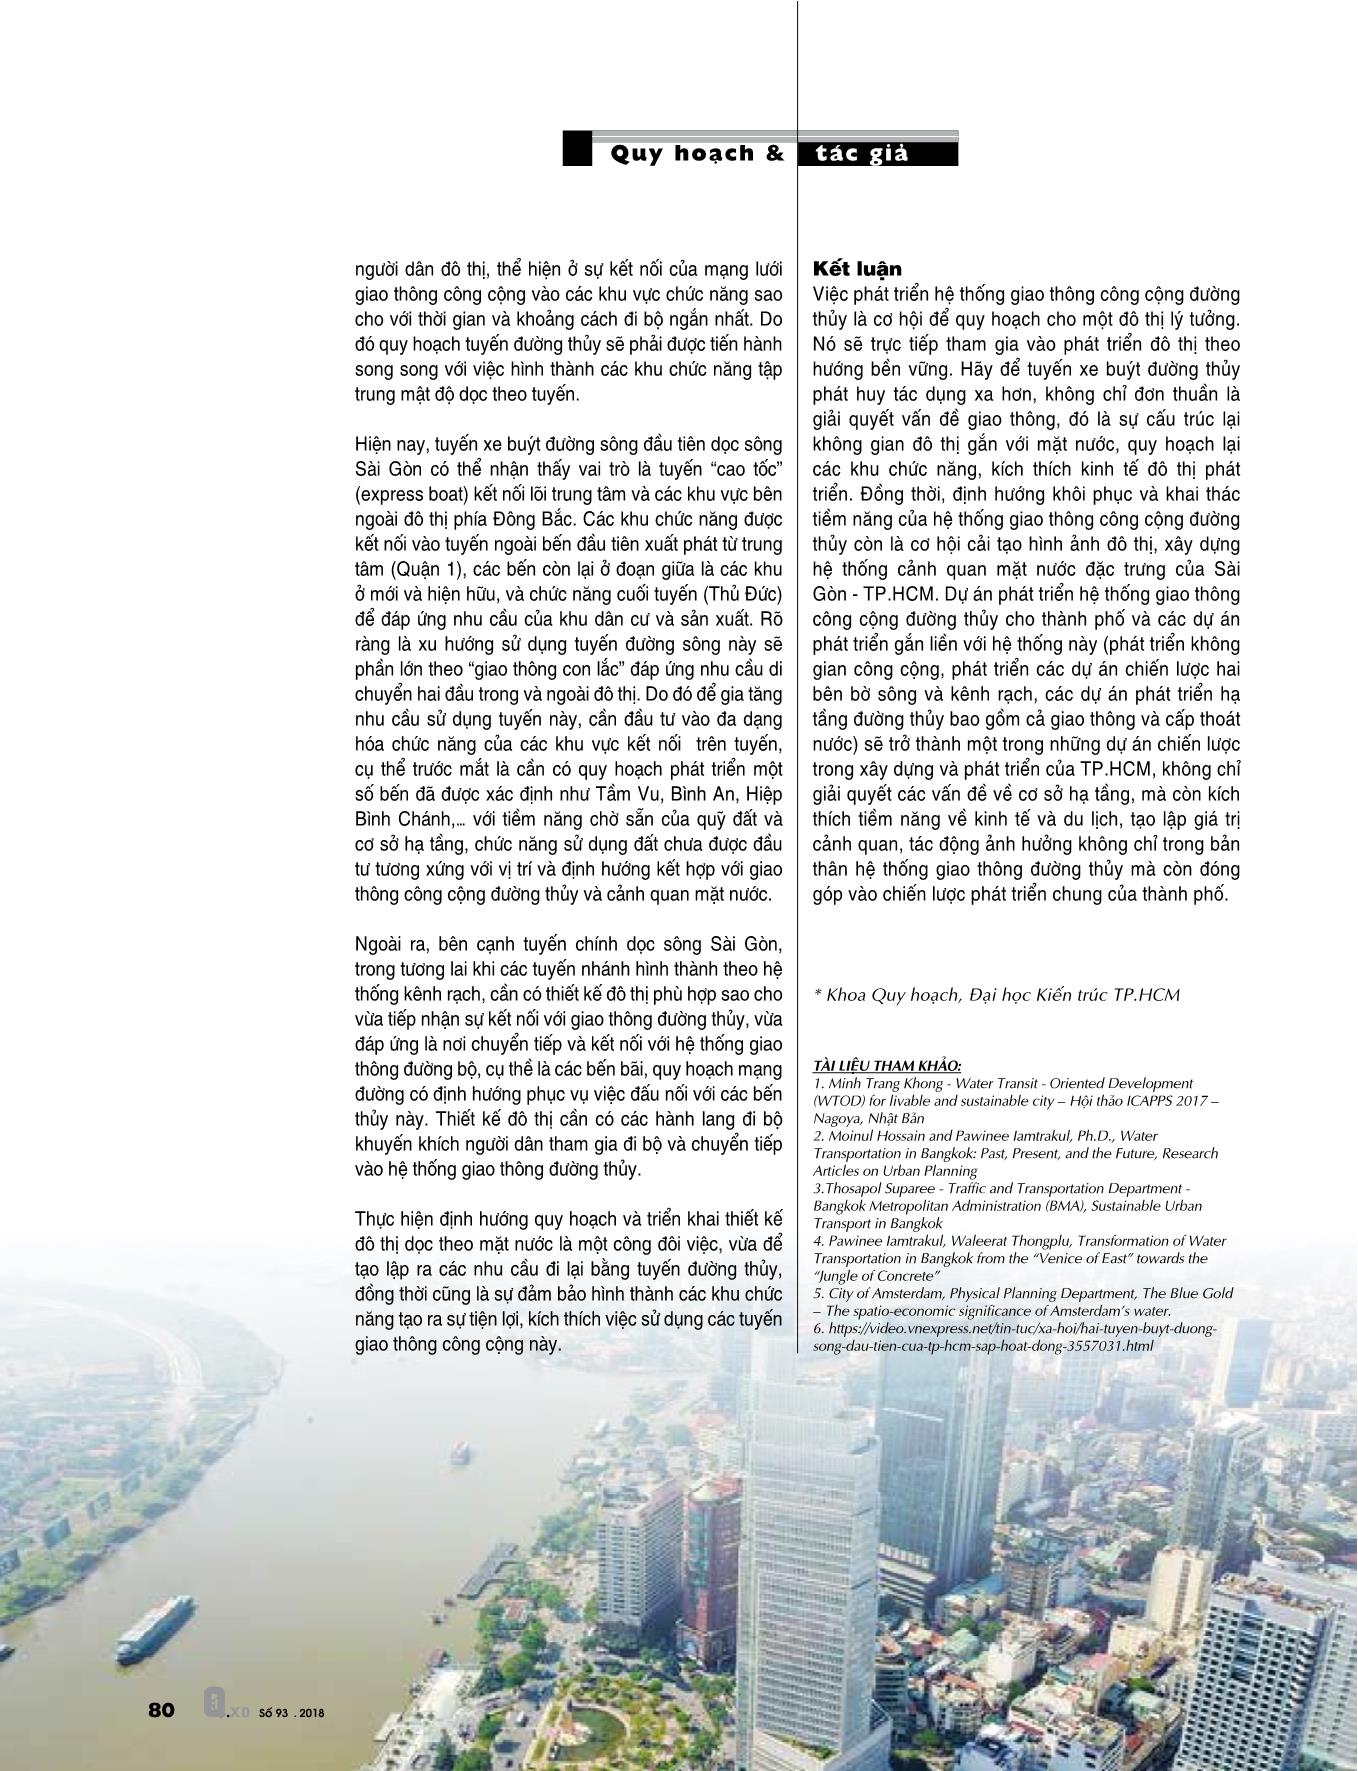 Chiến lược phát triển đô thị gắn với hệ thống giao thông công cộng đường thủy TP. HCM trang 5